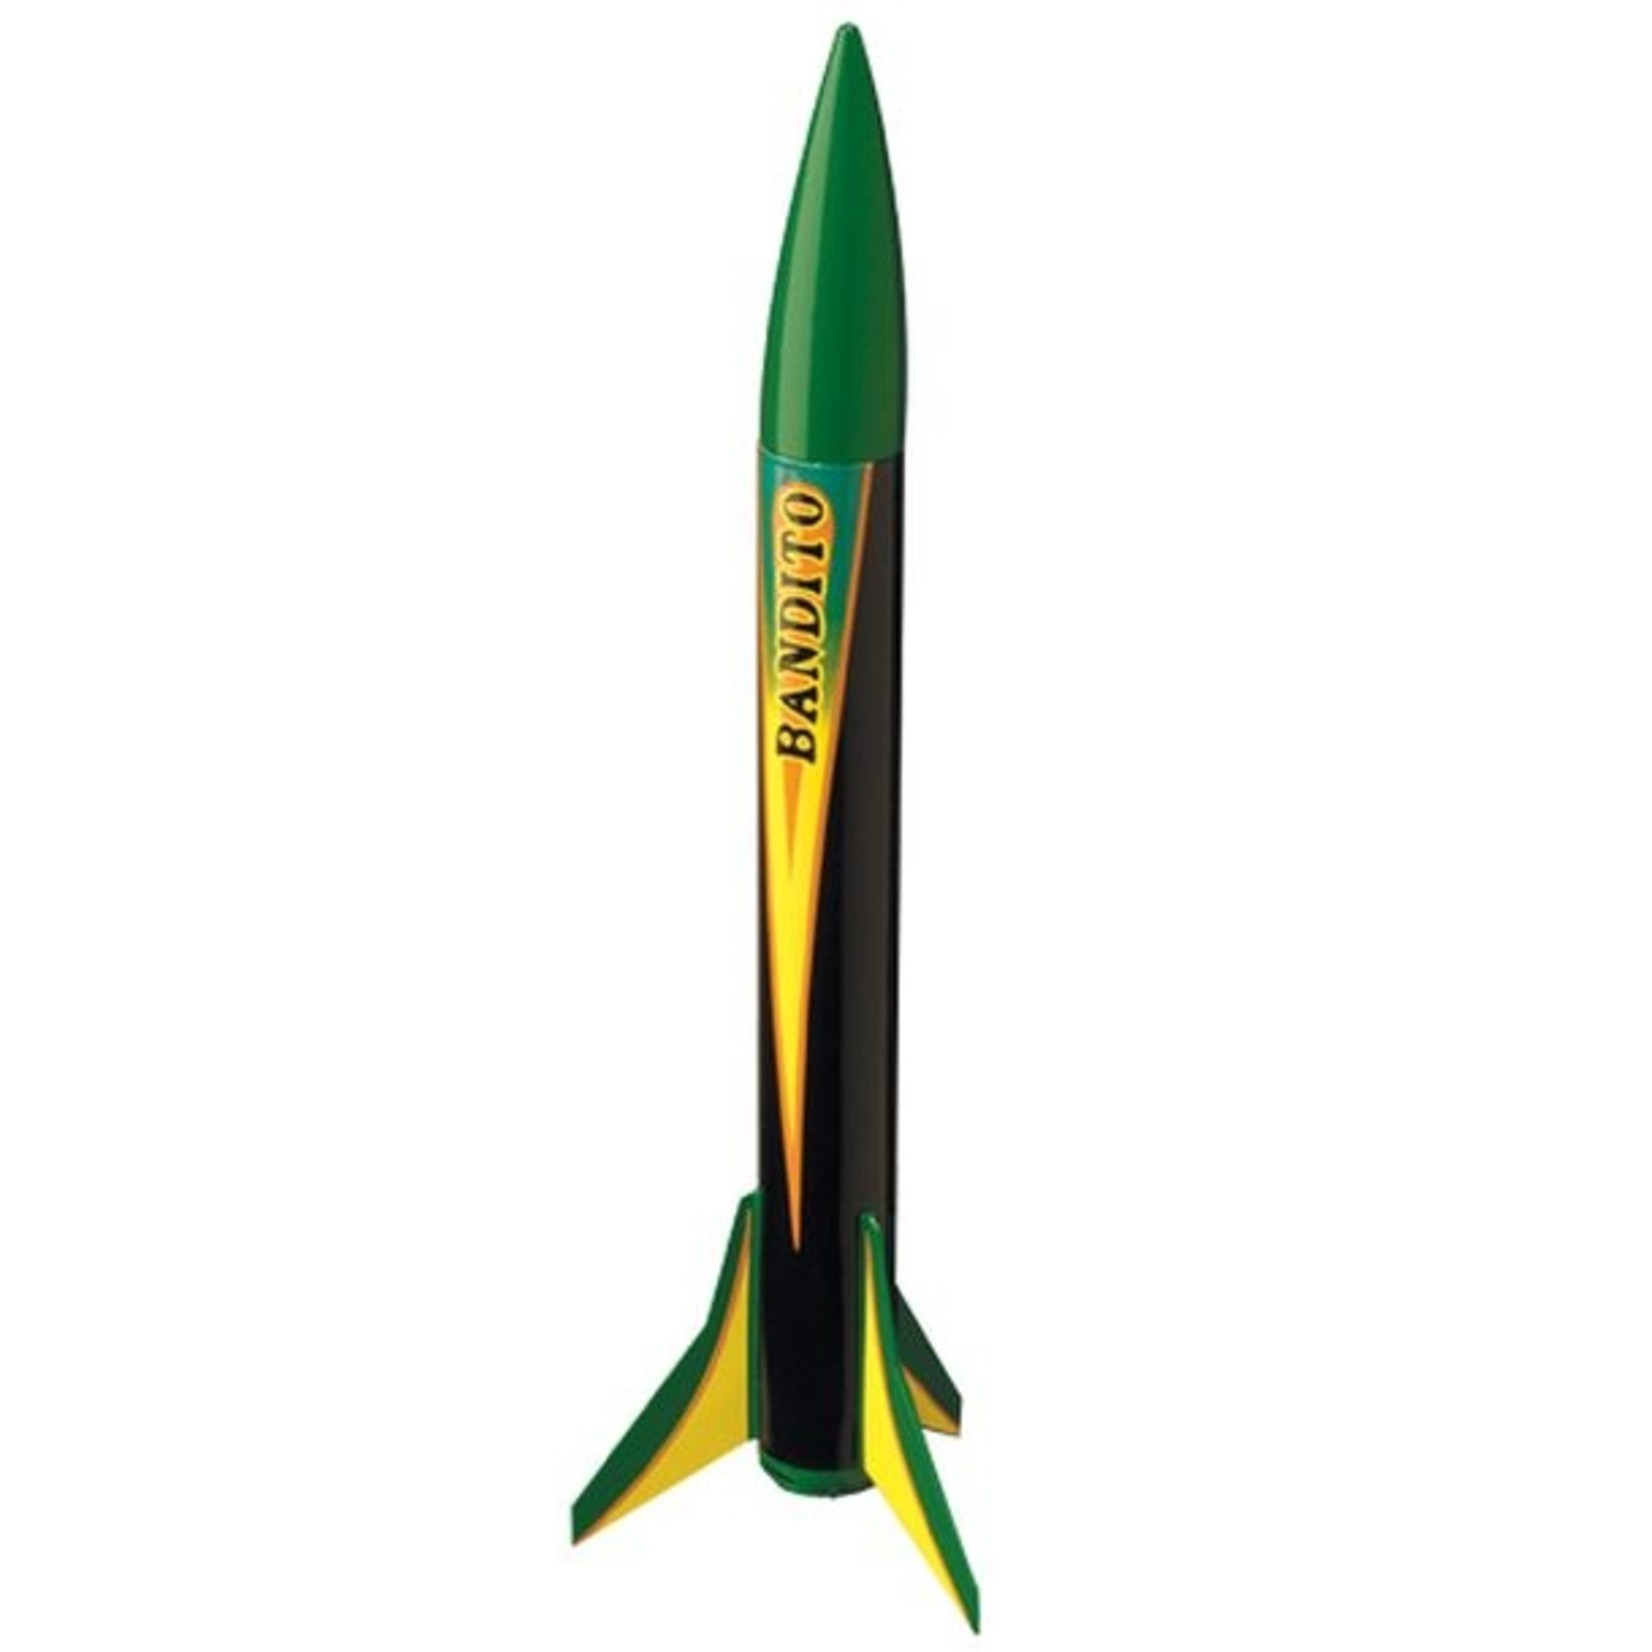 Estes Rockets EST0803  Bandito Rocket Kit, E2X